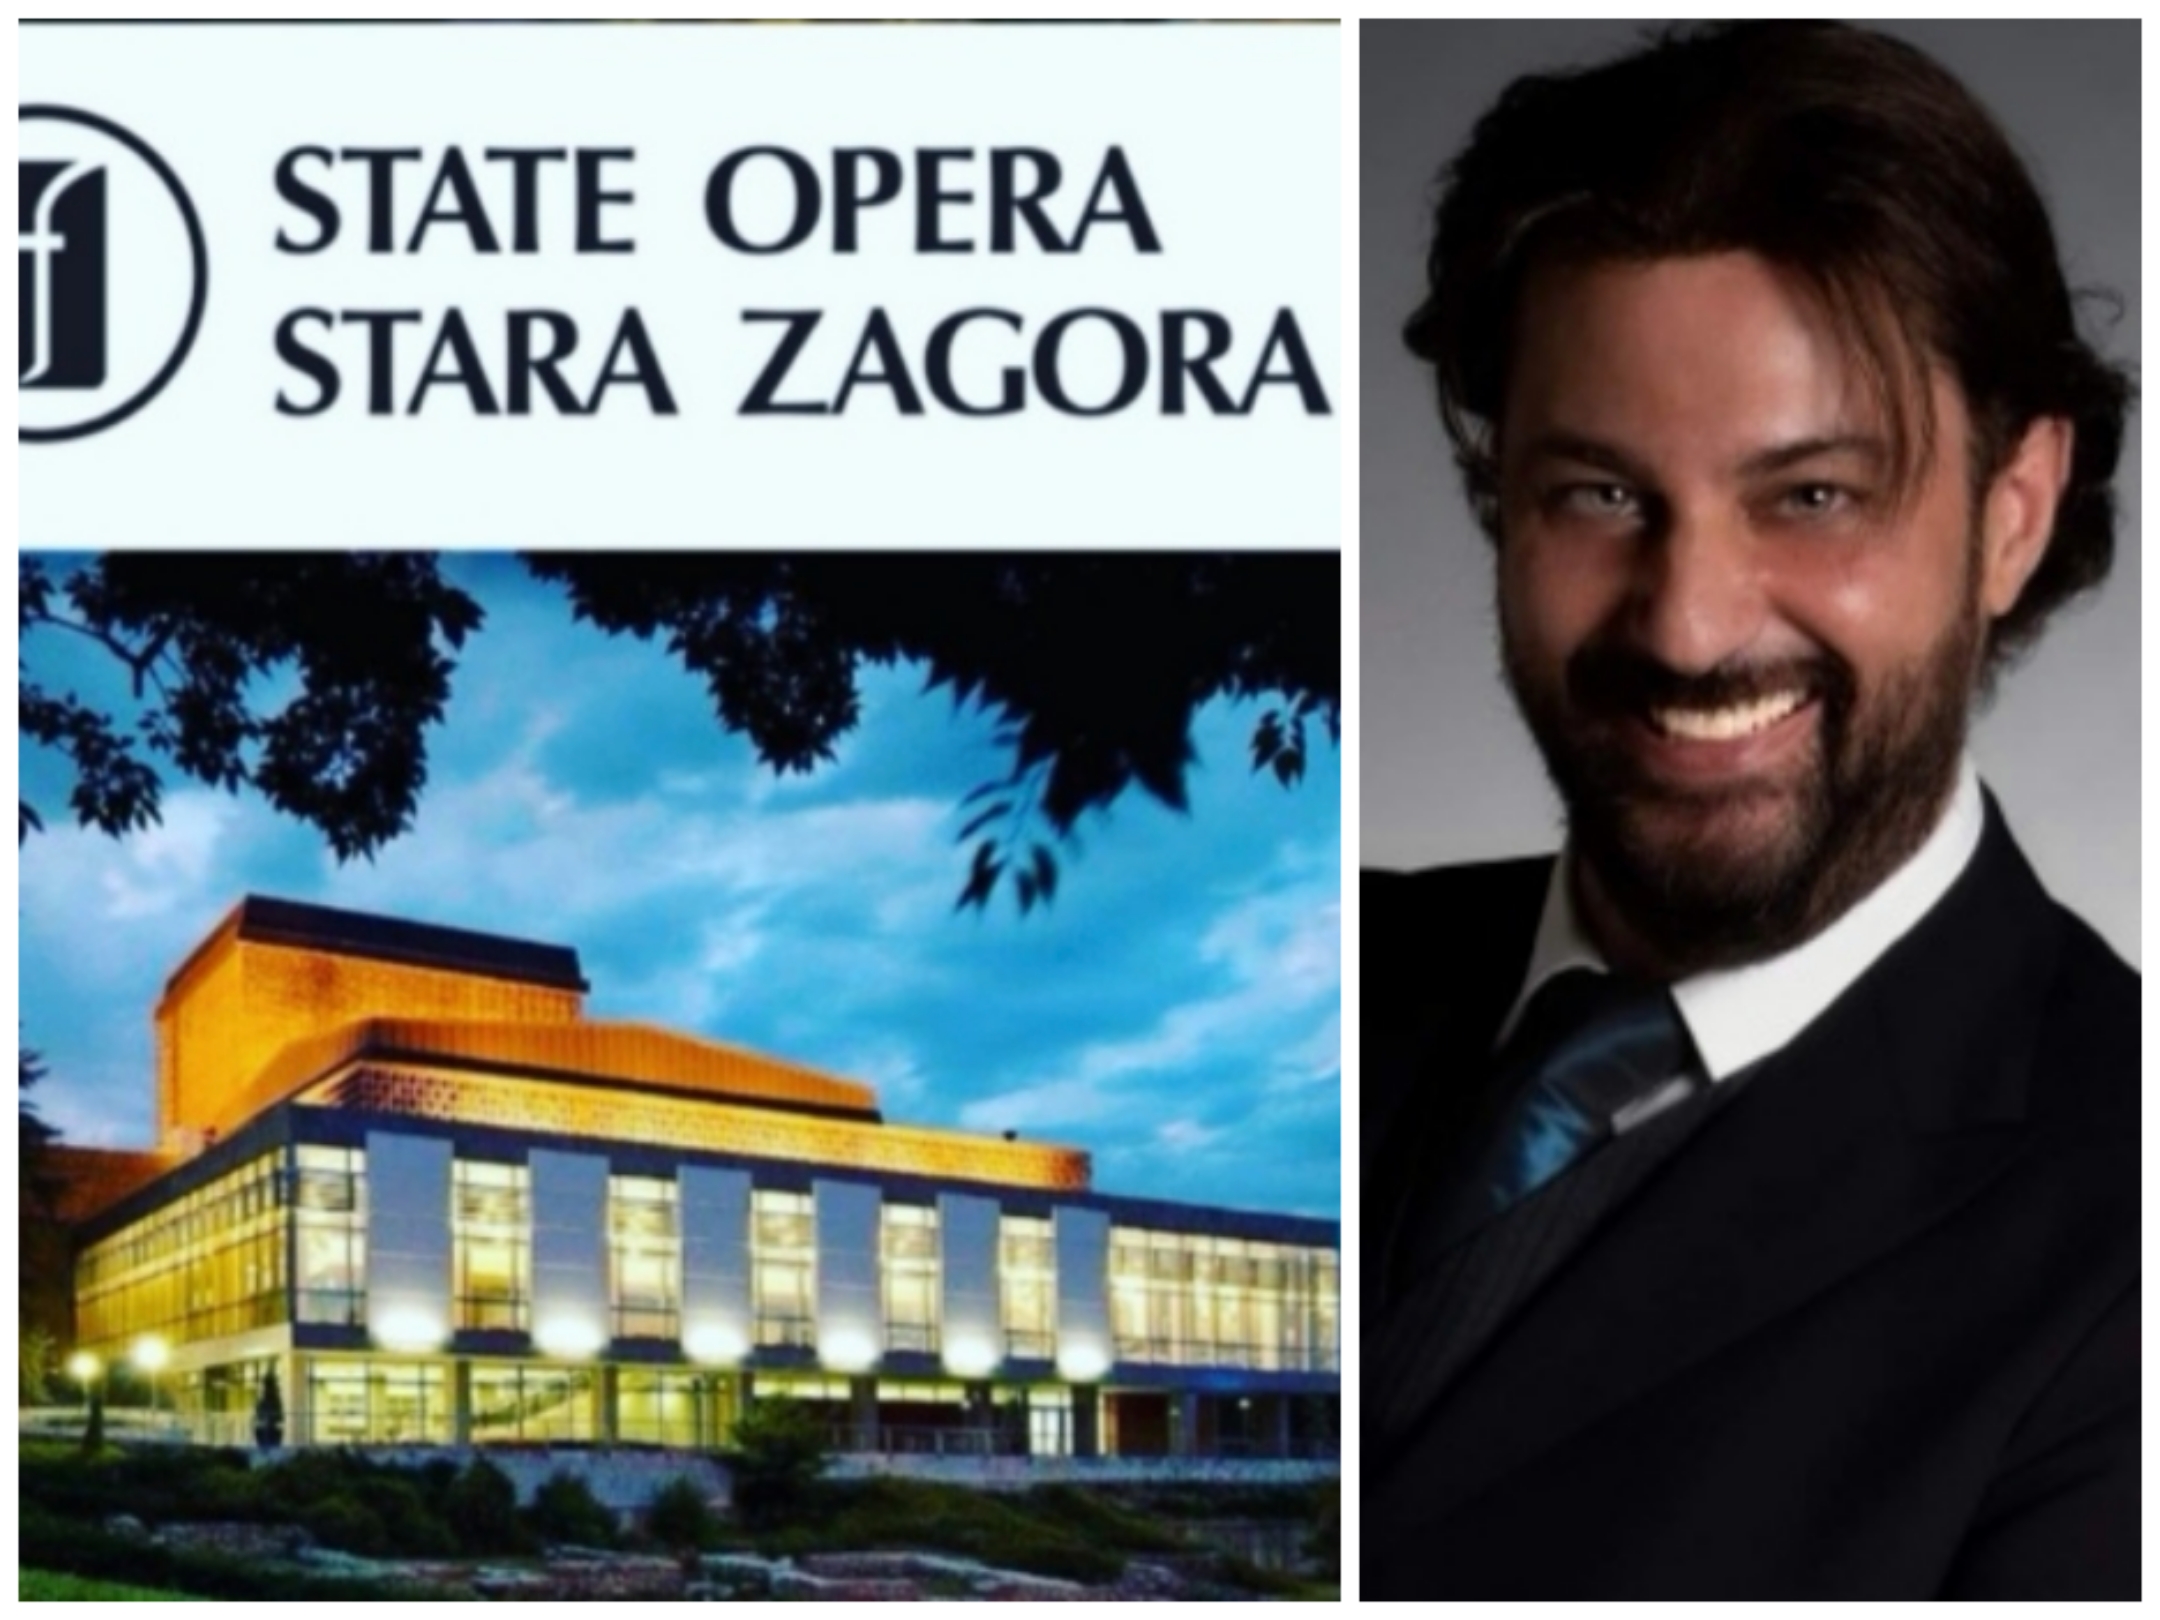 Antonio Desiderio nominato Consulente Artistico per il Balletto del Teatro dell’Opera di Stara Zagora